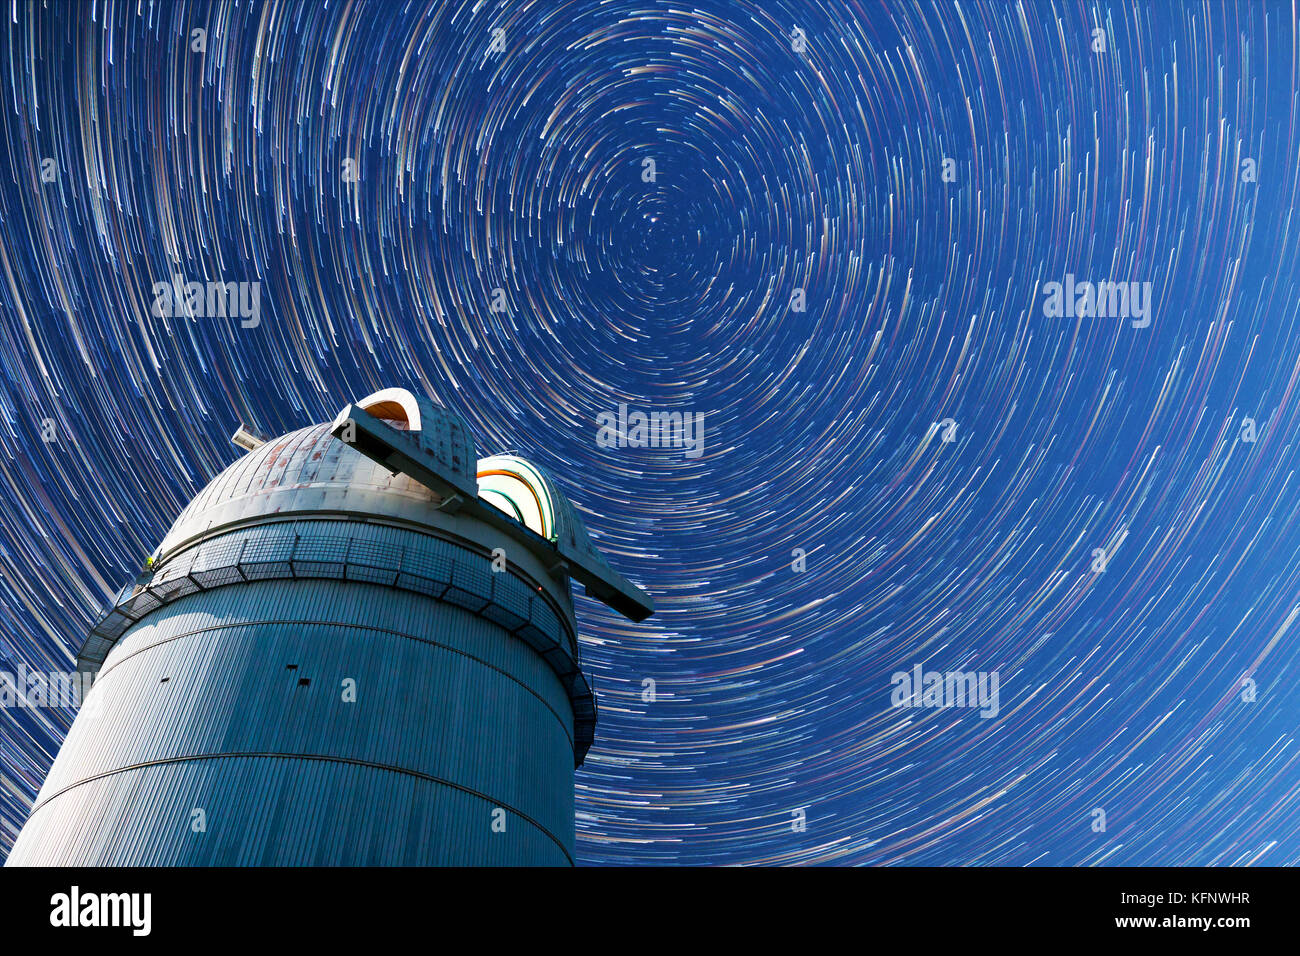 Observatoire astronomique sous le ciel nocturne des étoiles. Ciel bleu avec des centaines d'étoiles de la Voie lactée. Mode Timelapse dans la comète. Banque D'Images